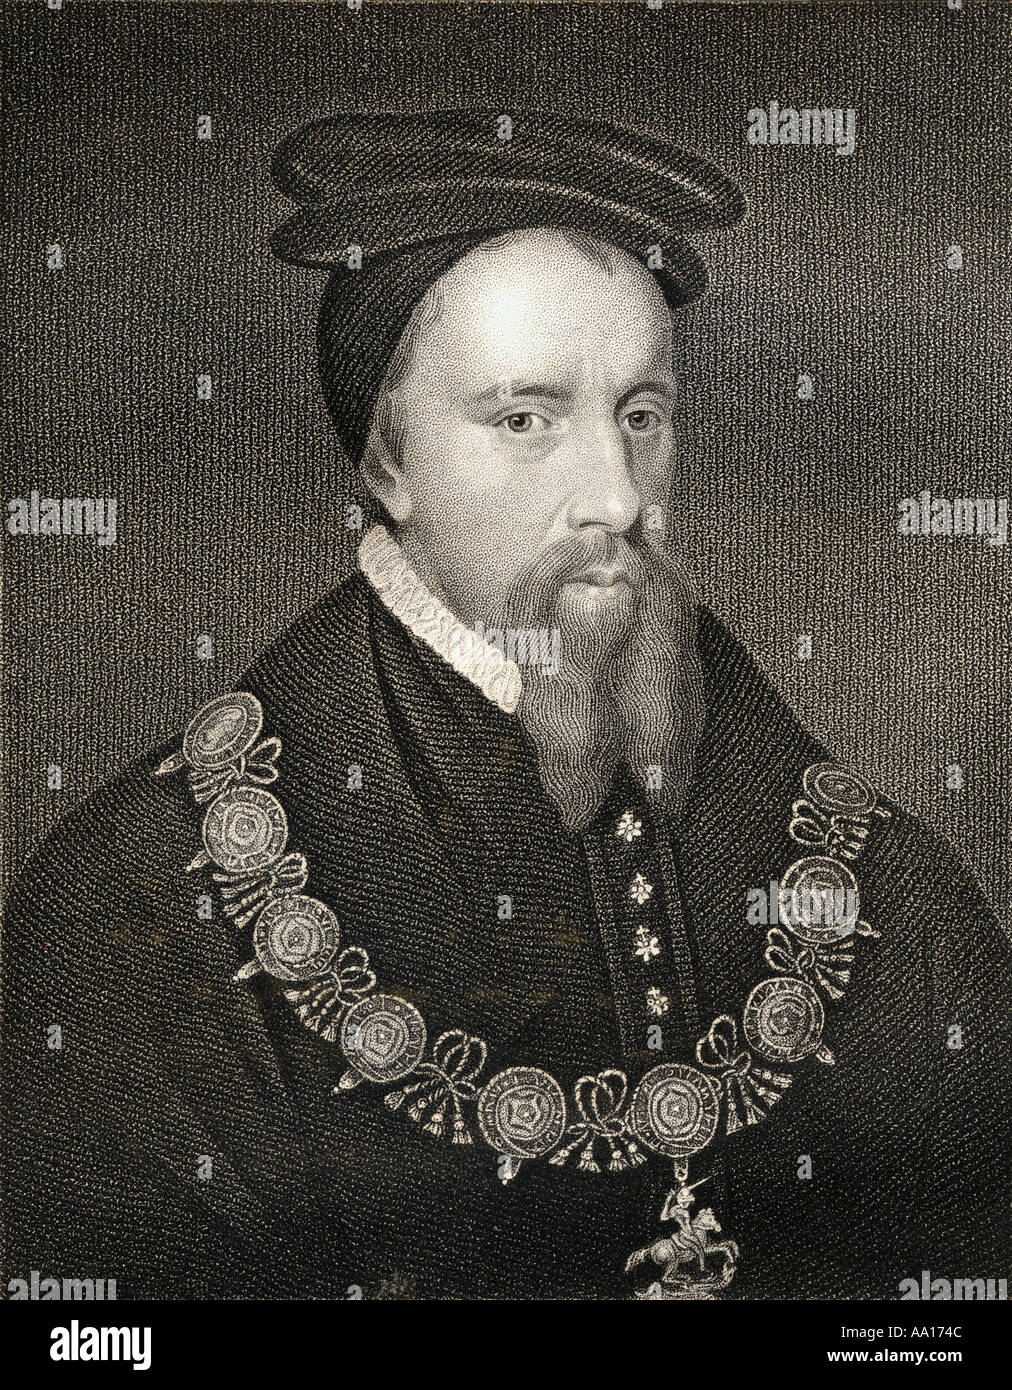 Thomas Stanley, 1er comte de Derby, 1435 – 1504. Noble et politicien anglais, figure éminente dans la phase ultérieure des guerres des Roses en Angleterre. Banque D'Images